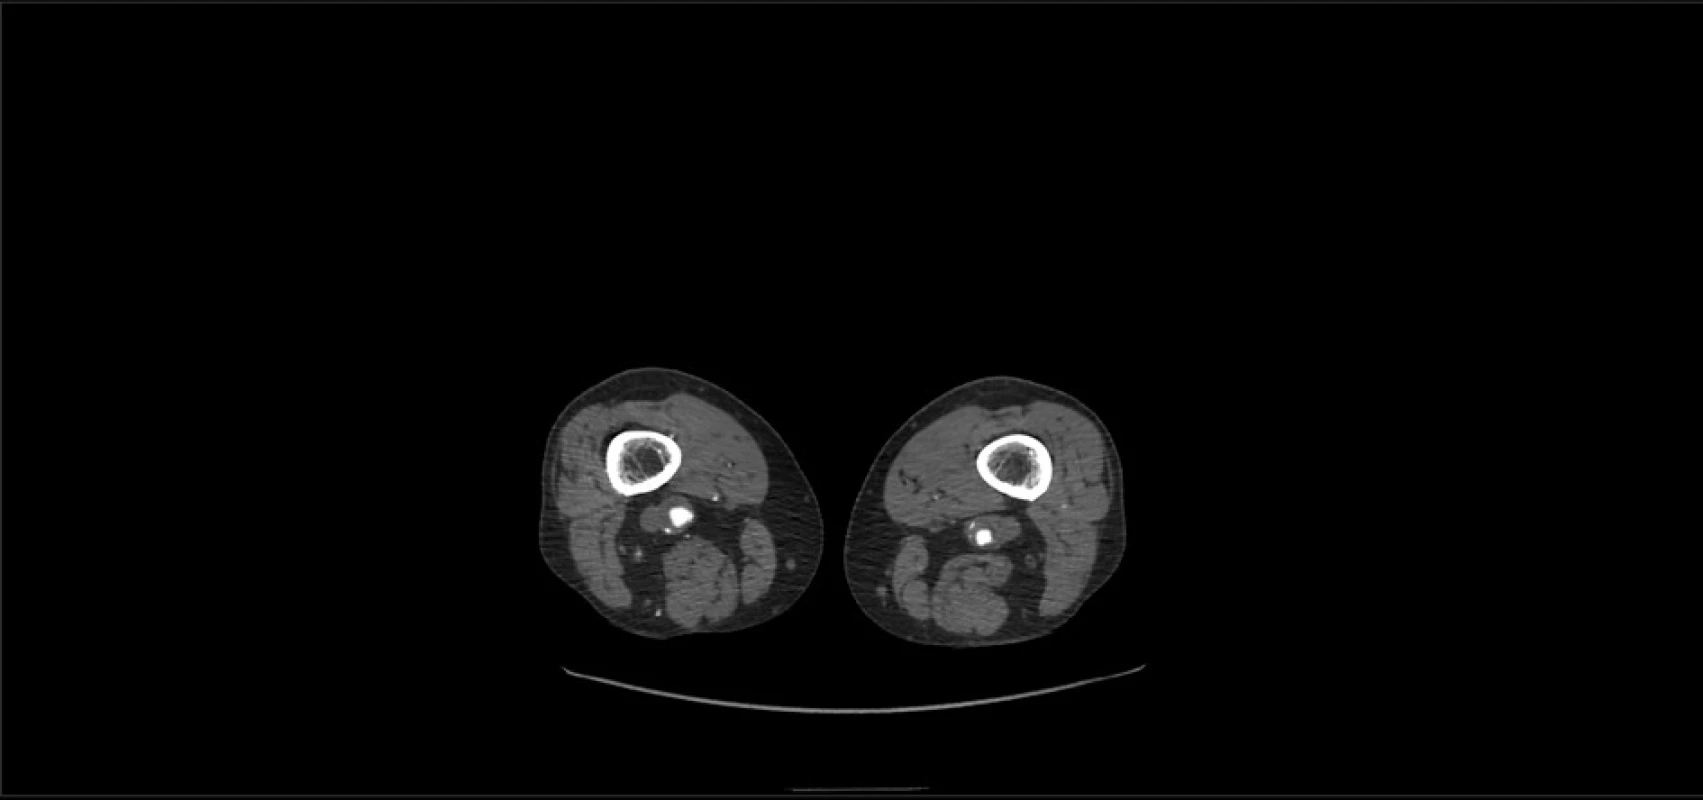 CT angiografie – výdutě podkolenních tepen –
příčný řez<br>
Fig. 2: CT angiography – popliteal artery aneurysms –
cross-section